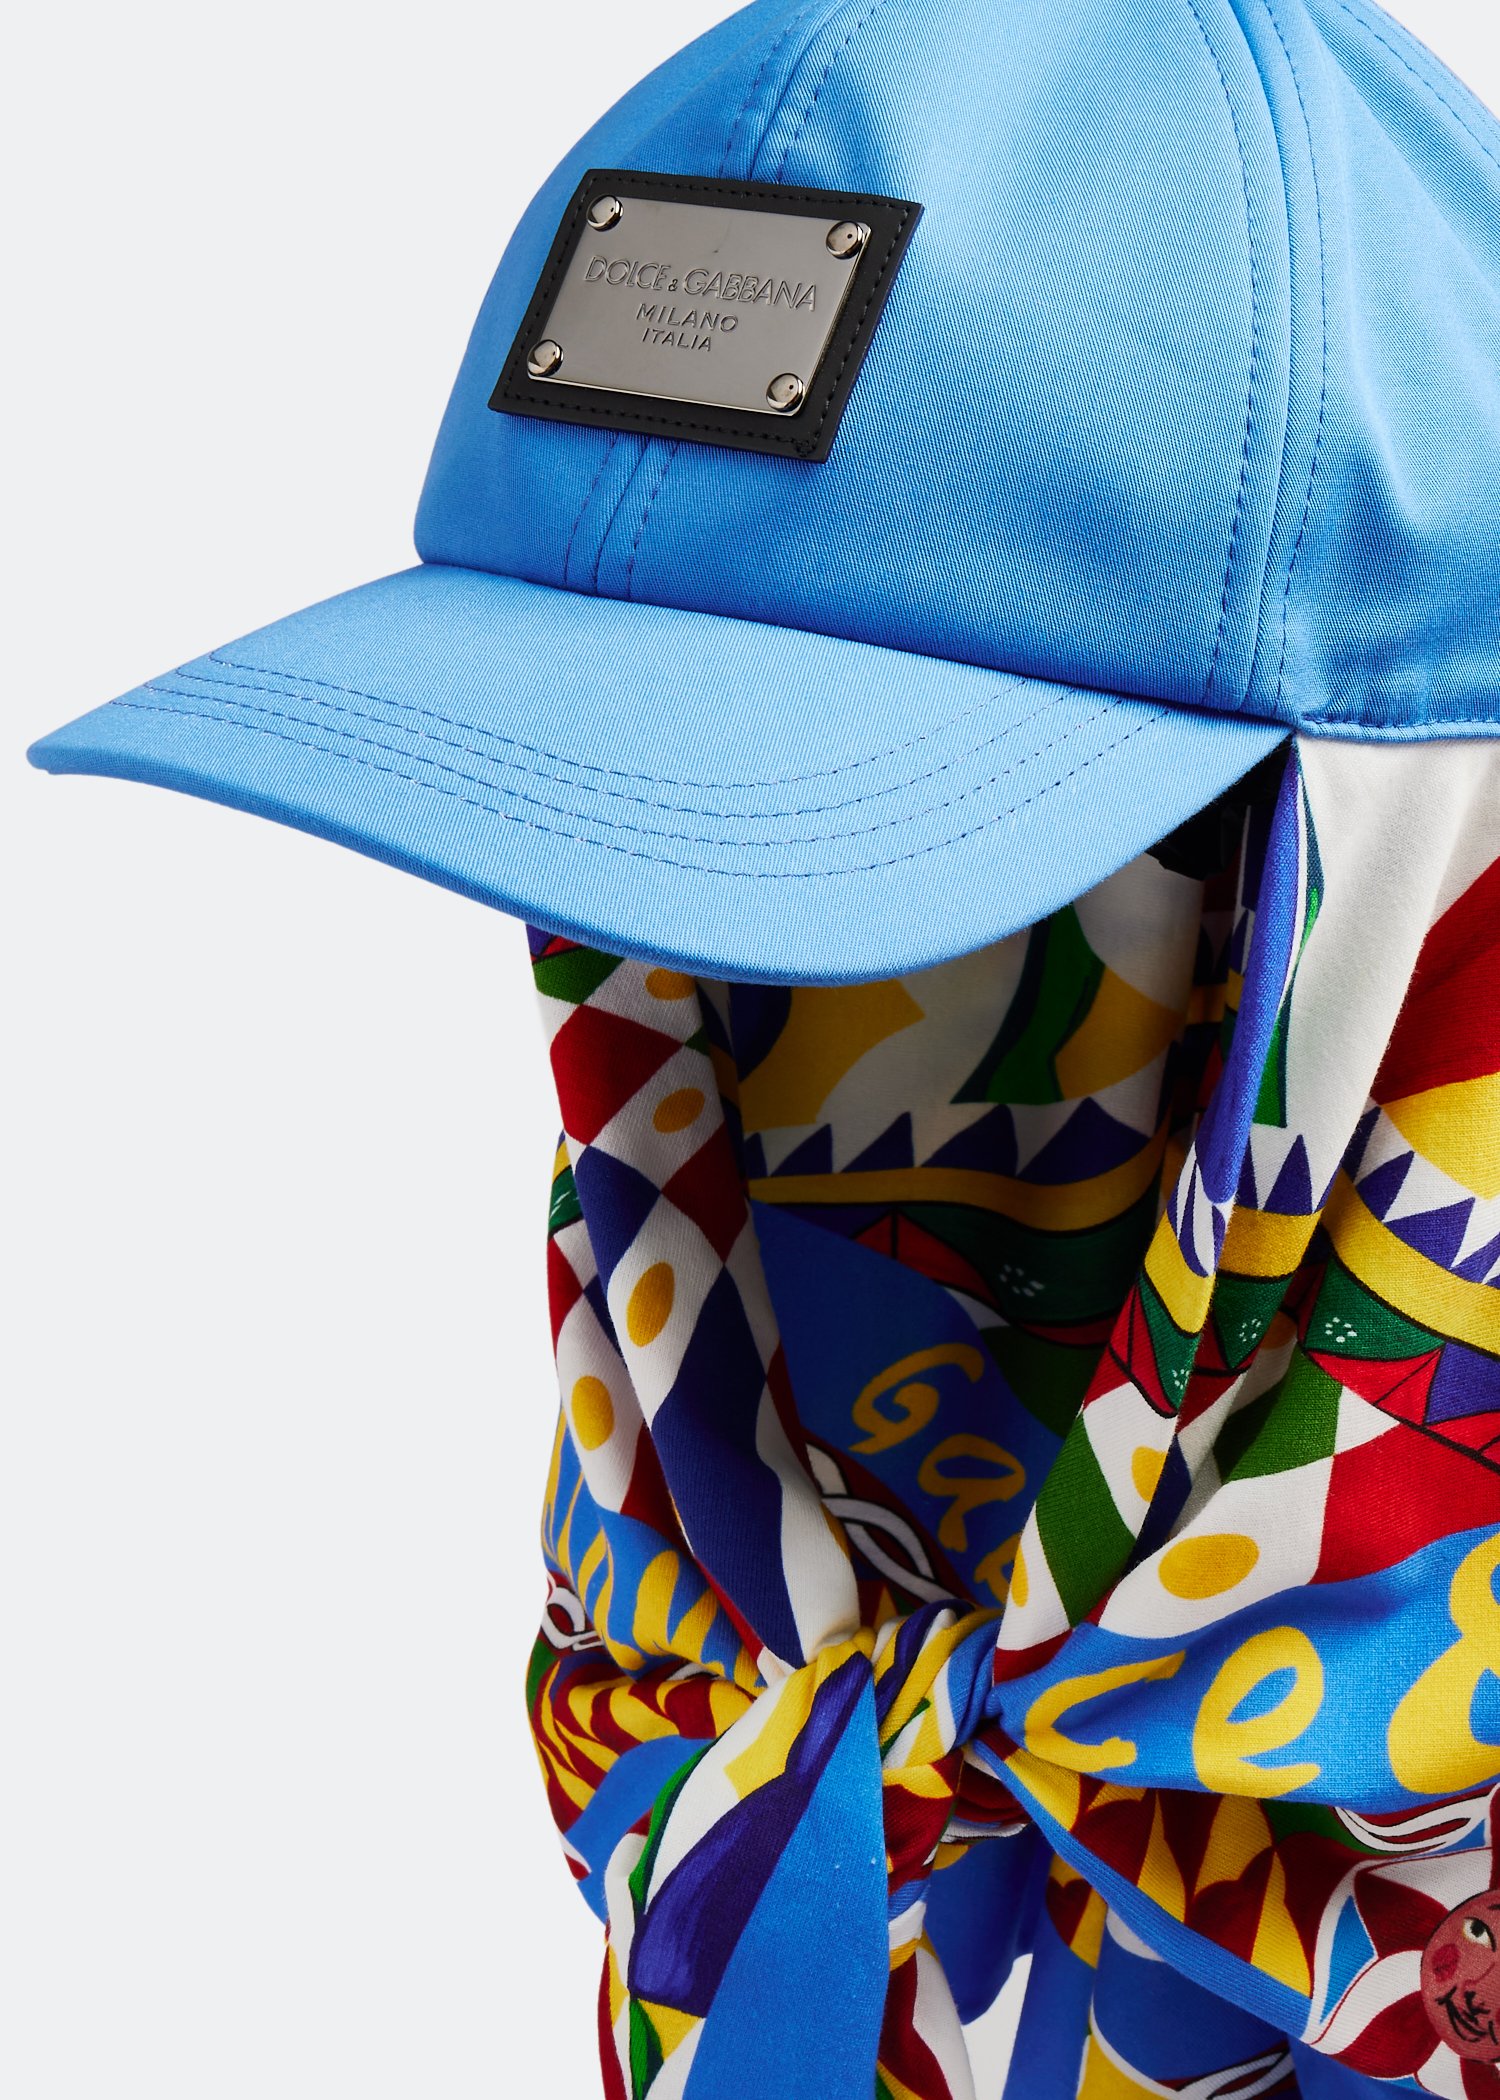 Dolce&Gabbana男士棒球帽搭配Carretto 印花围巾- 蓝色在阿联酋